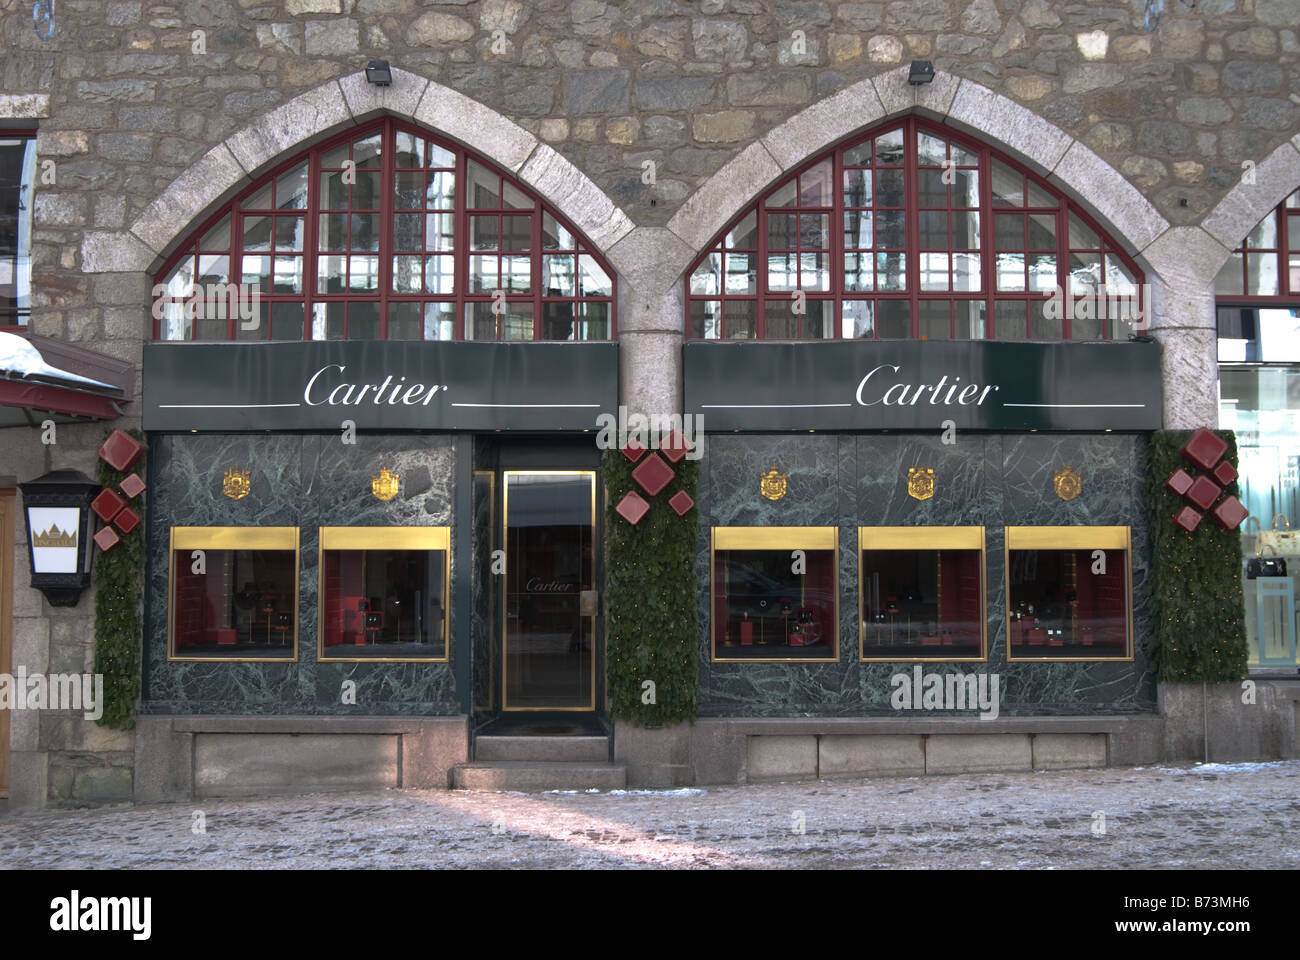 The Cartier shop in St Moritz Switzerland Stock Photo